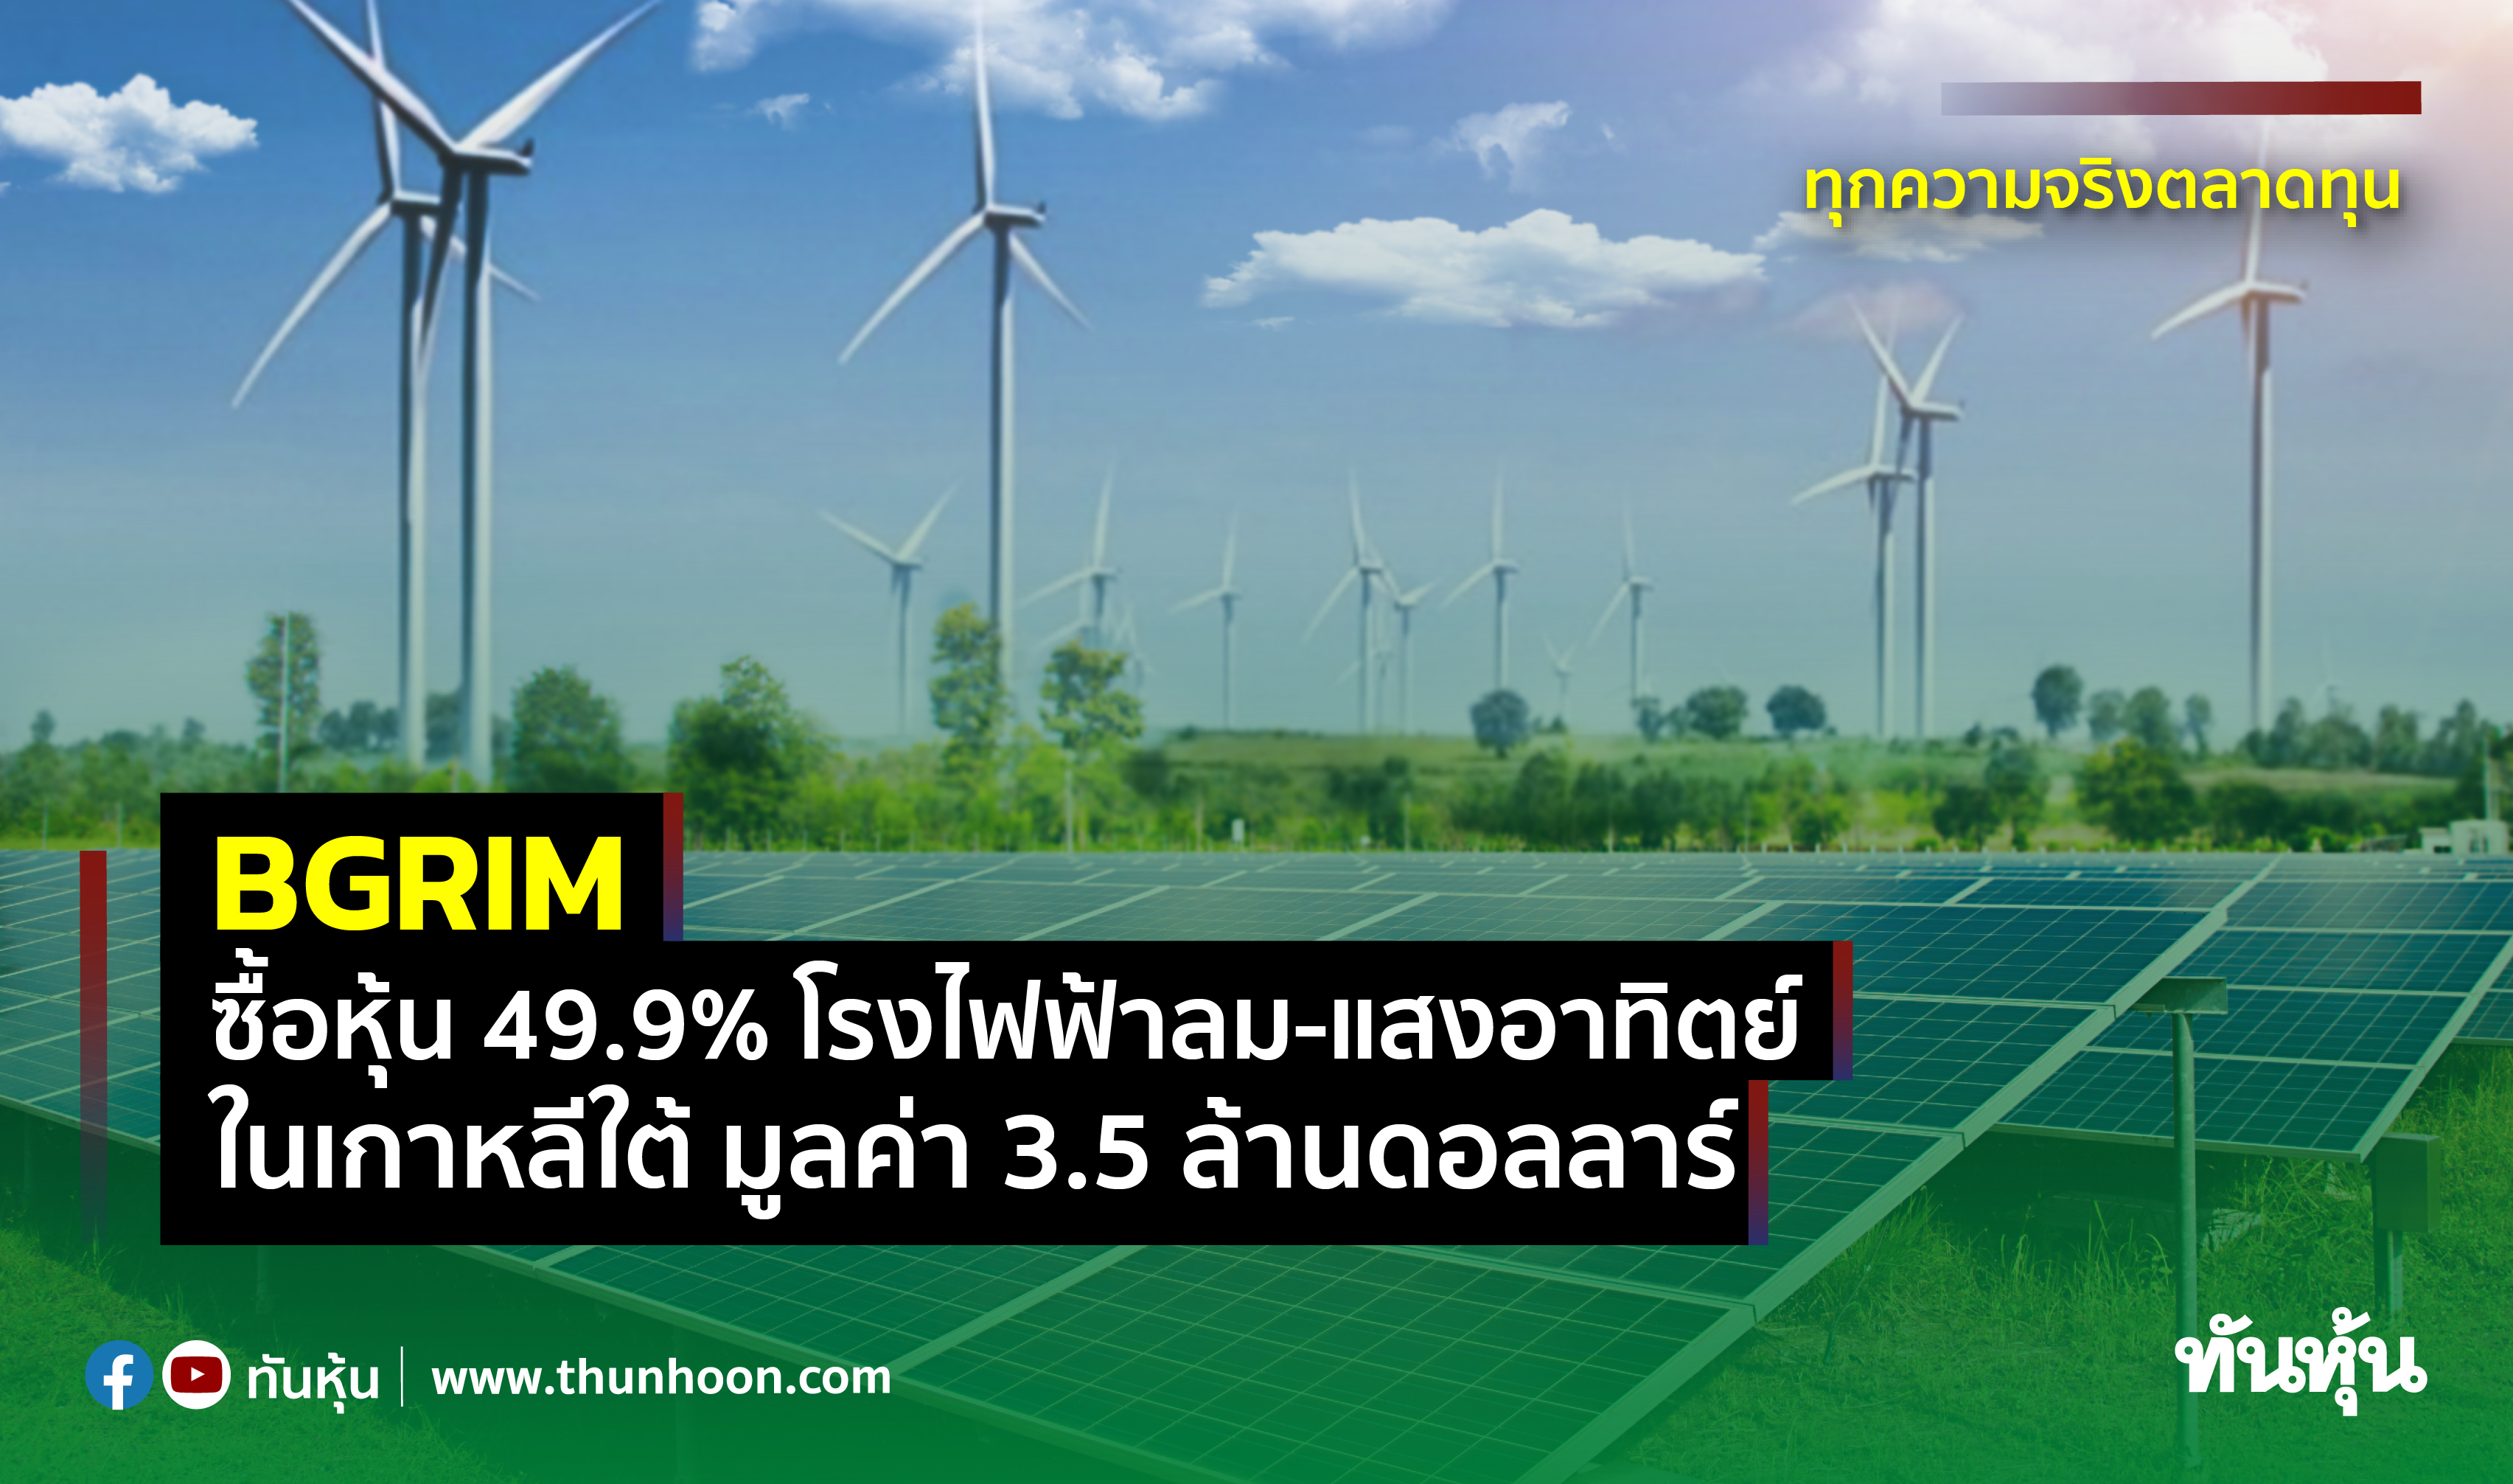 BGRIM ซื้อหุ้น 49.9% โรงไฟฟ้าลม-แสงอาทิตย์ในเกาหลีใต้ มูลค่า 3.5 ล้านดอลลาร์